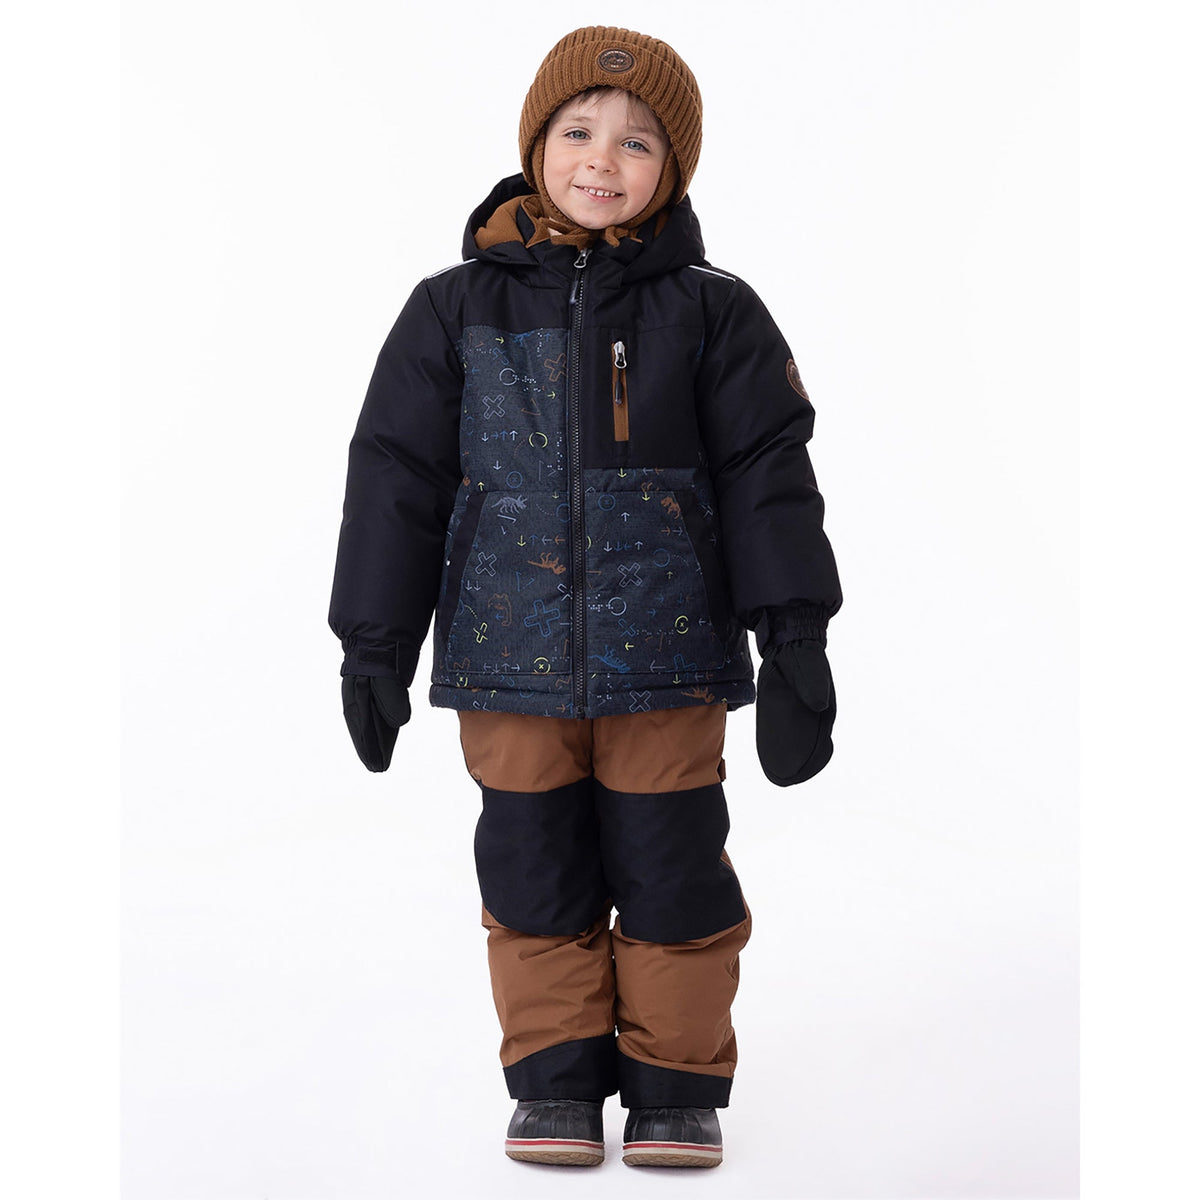 Habit de neige pour enfant garçon par Peluche Et Tartine | Samuel F23M03 Noir | Boutique Flos, vêtements mode pour bébés et enfants